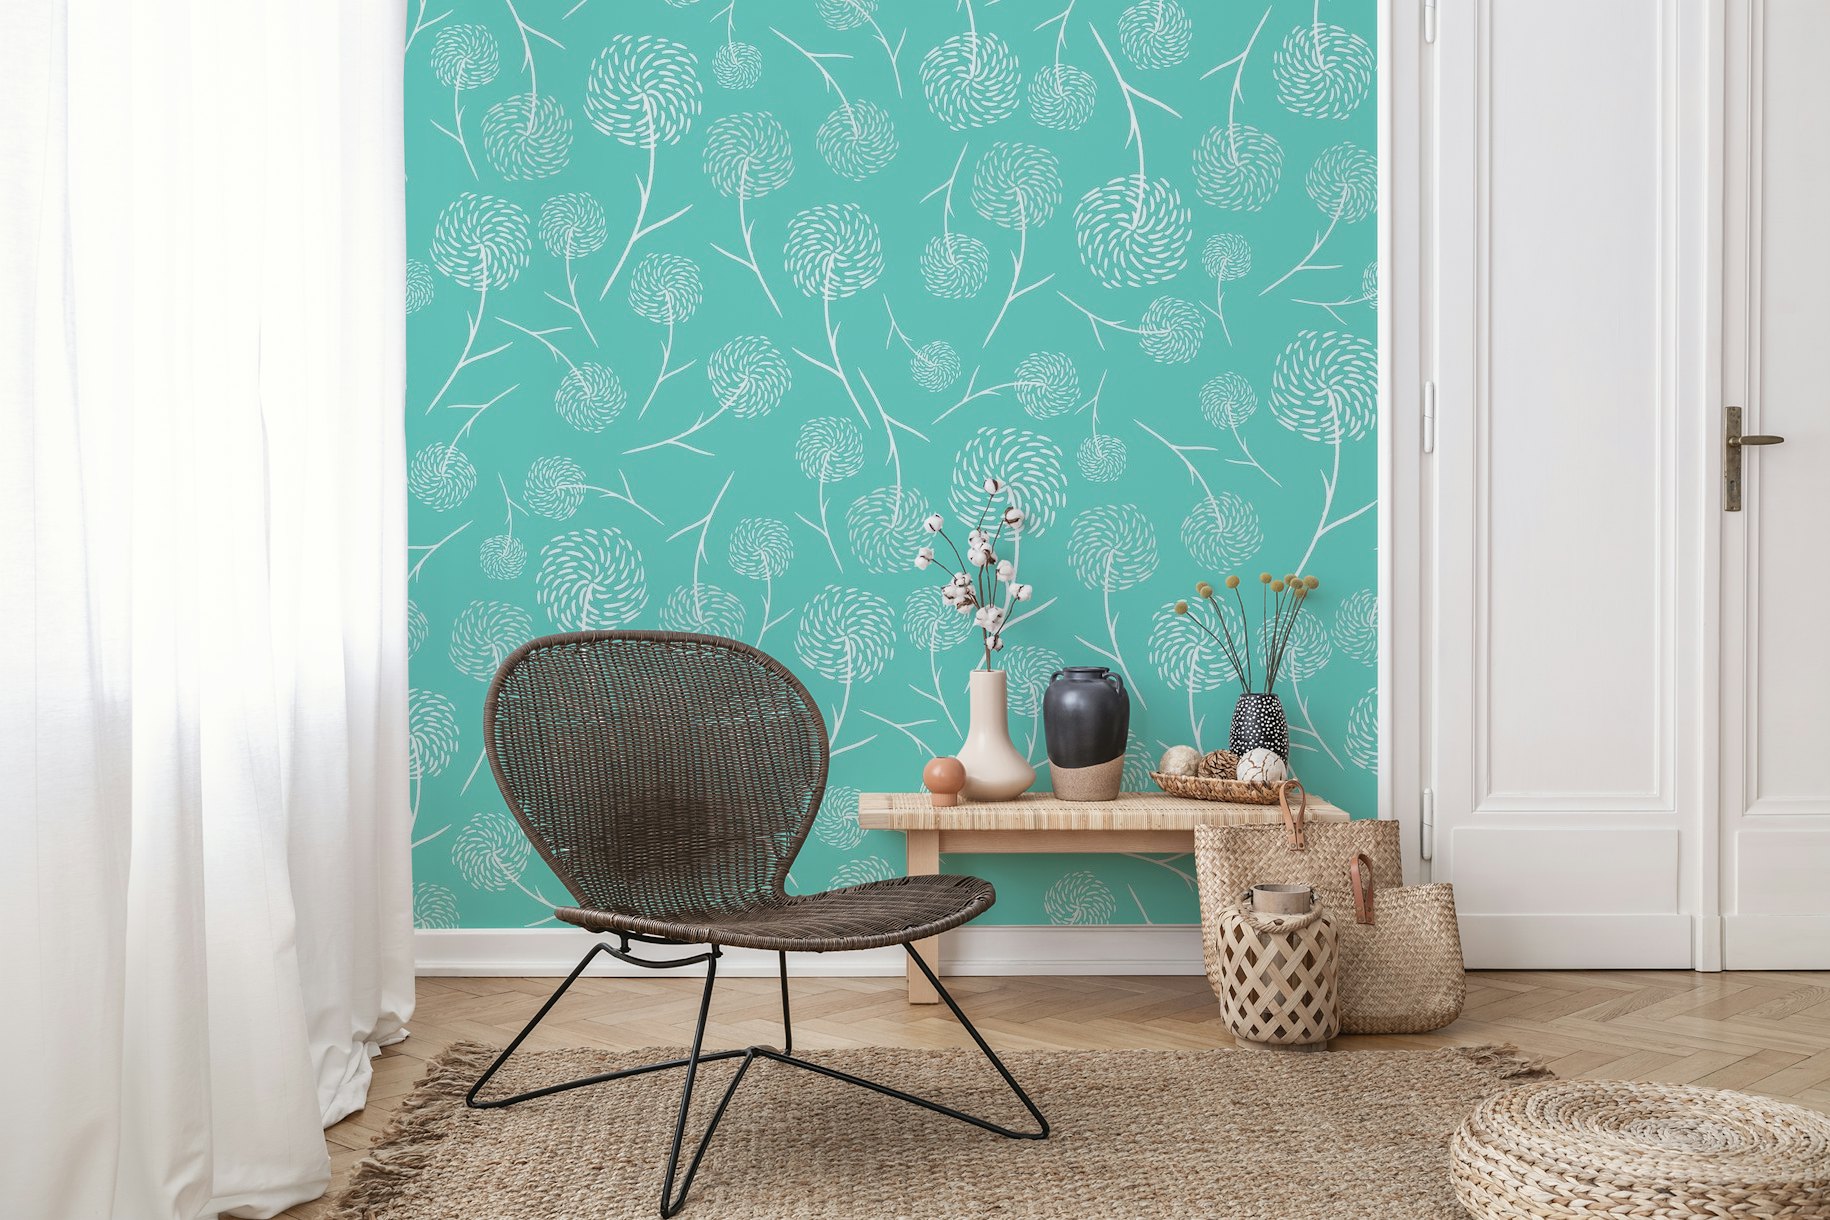 Dandelions pattern wallpaper